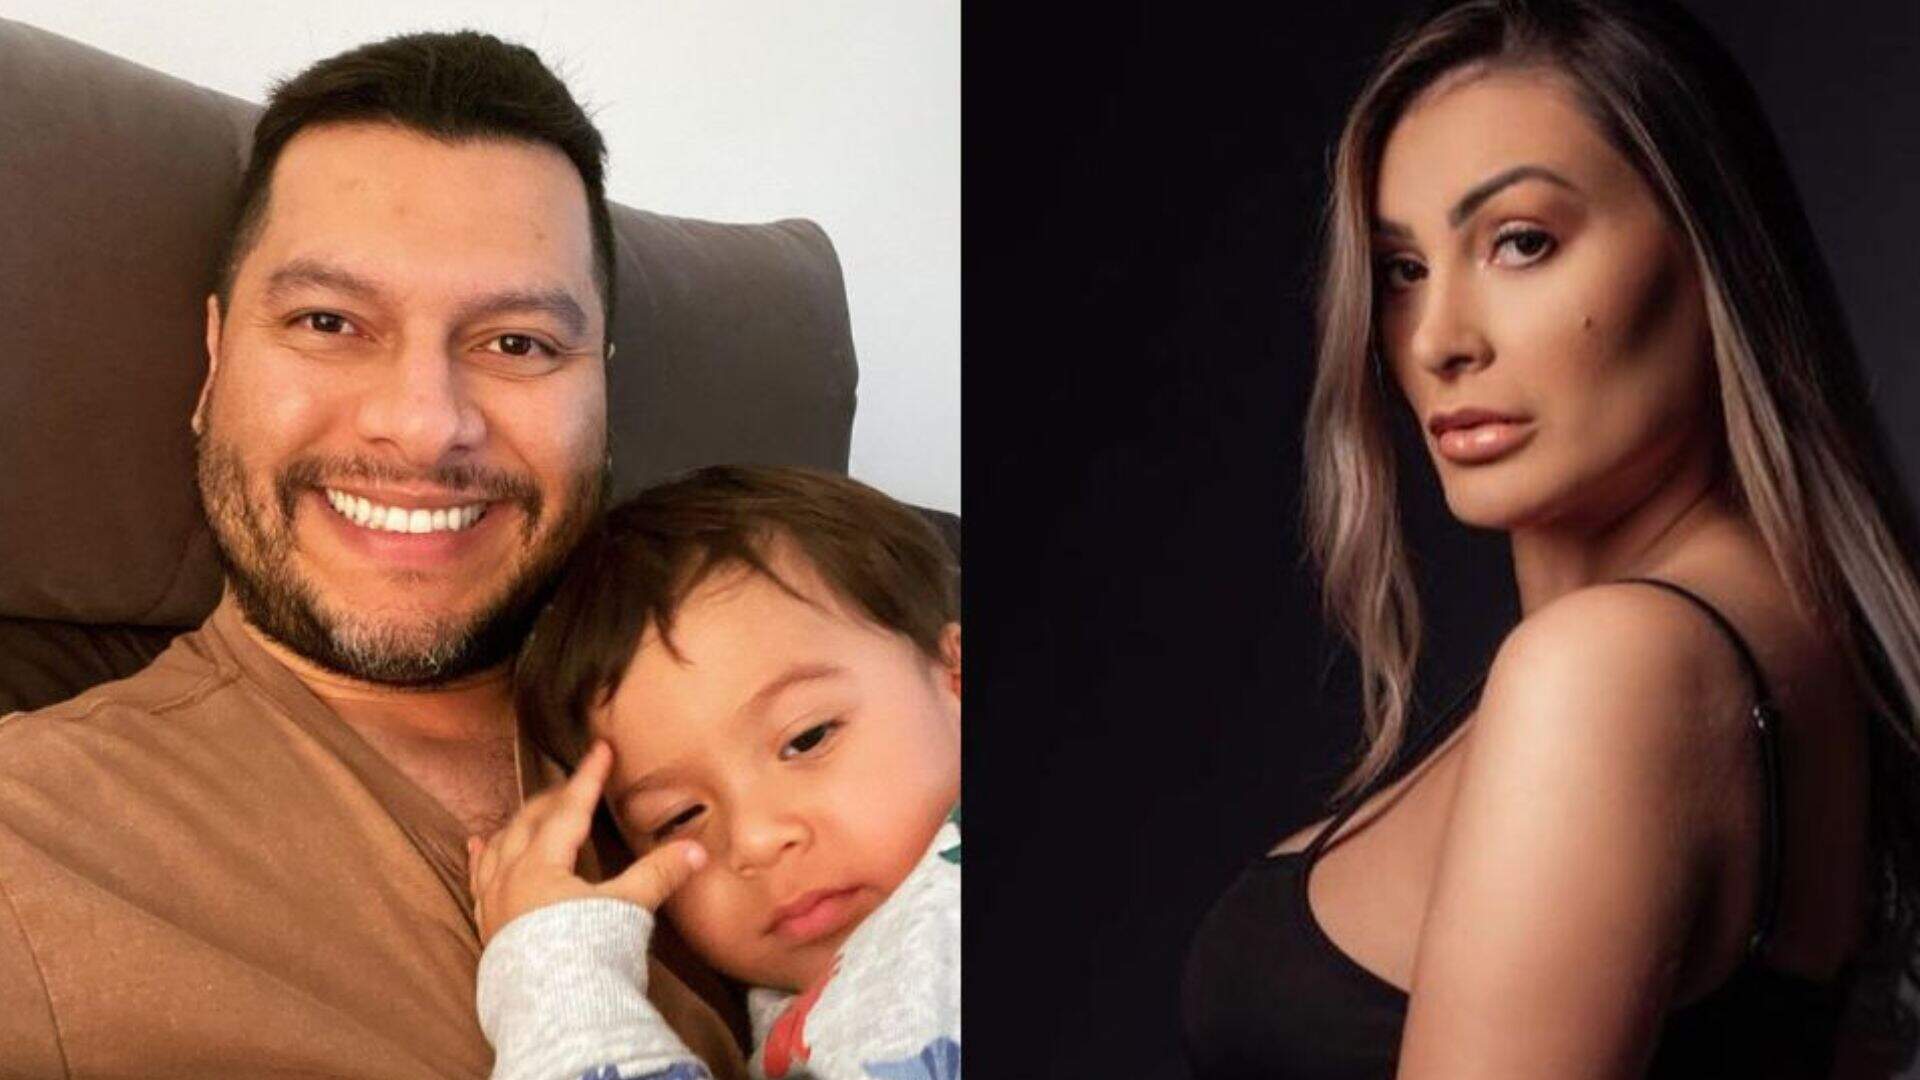 Após Andressa Urach fazer tatuagem escandalosa no an*s, ex-marido expõe o inacreditável no Instagram - Metropolitana FM